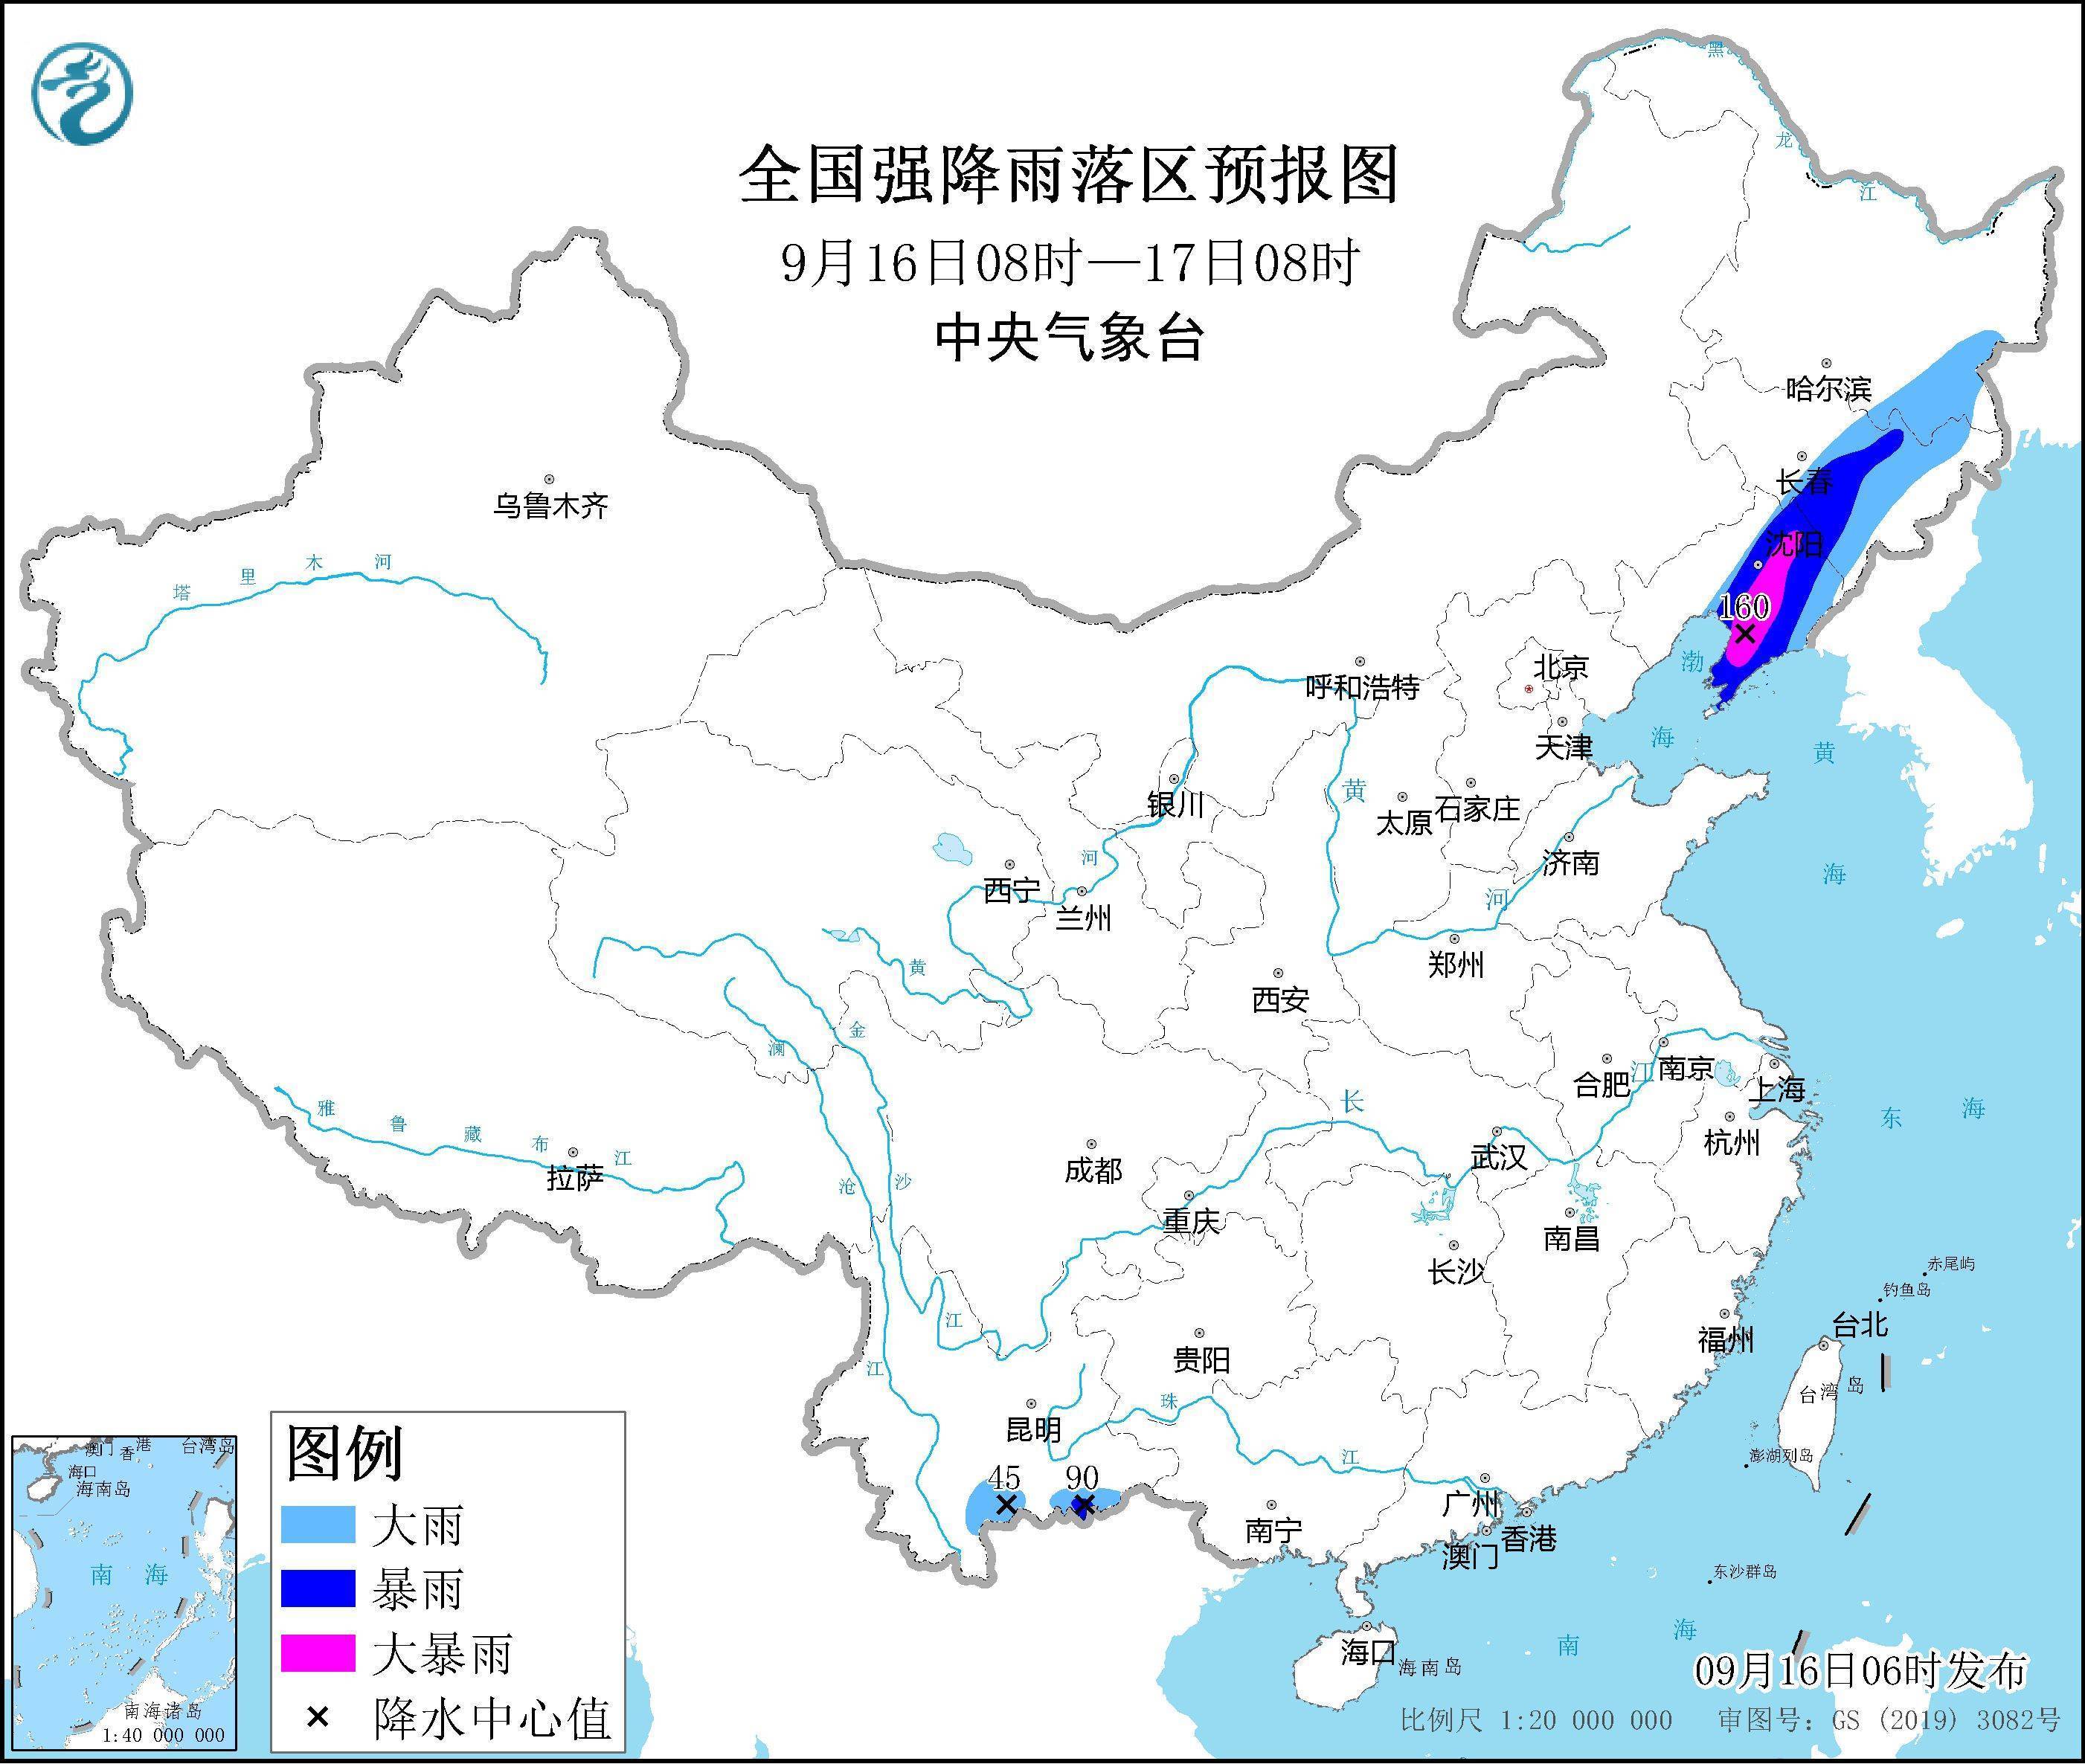 台风“梅花”将继续北上影响东北地区